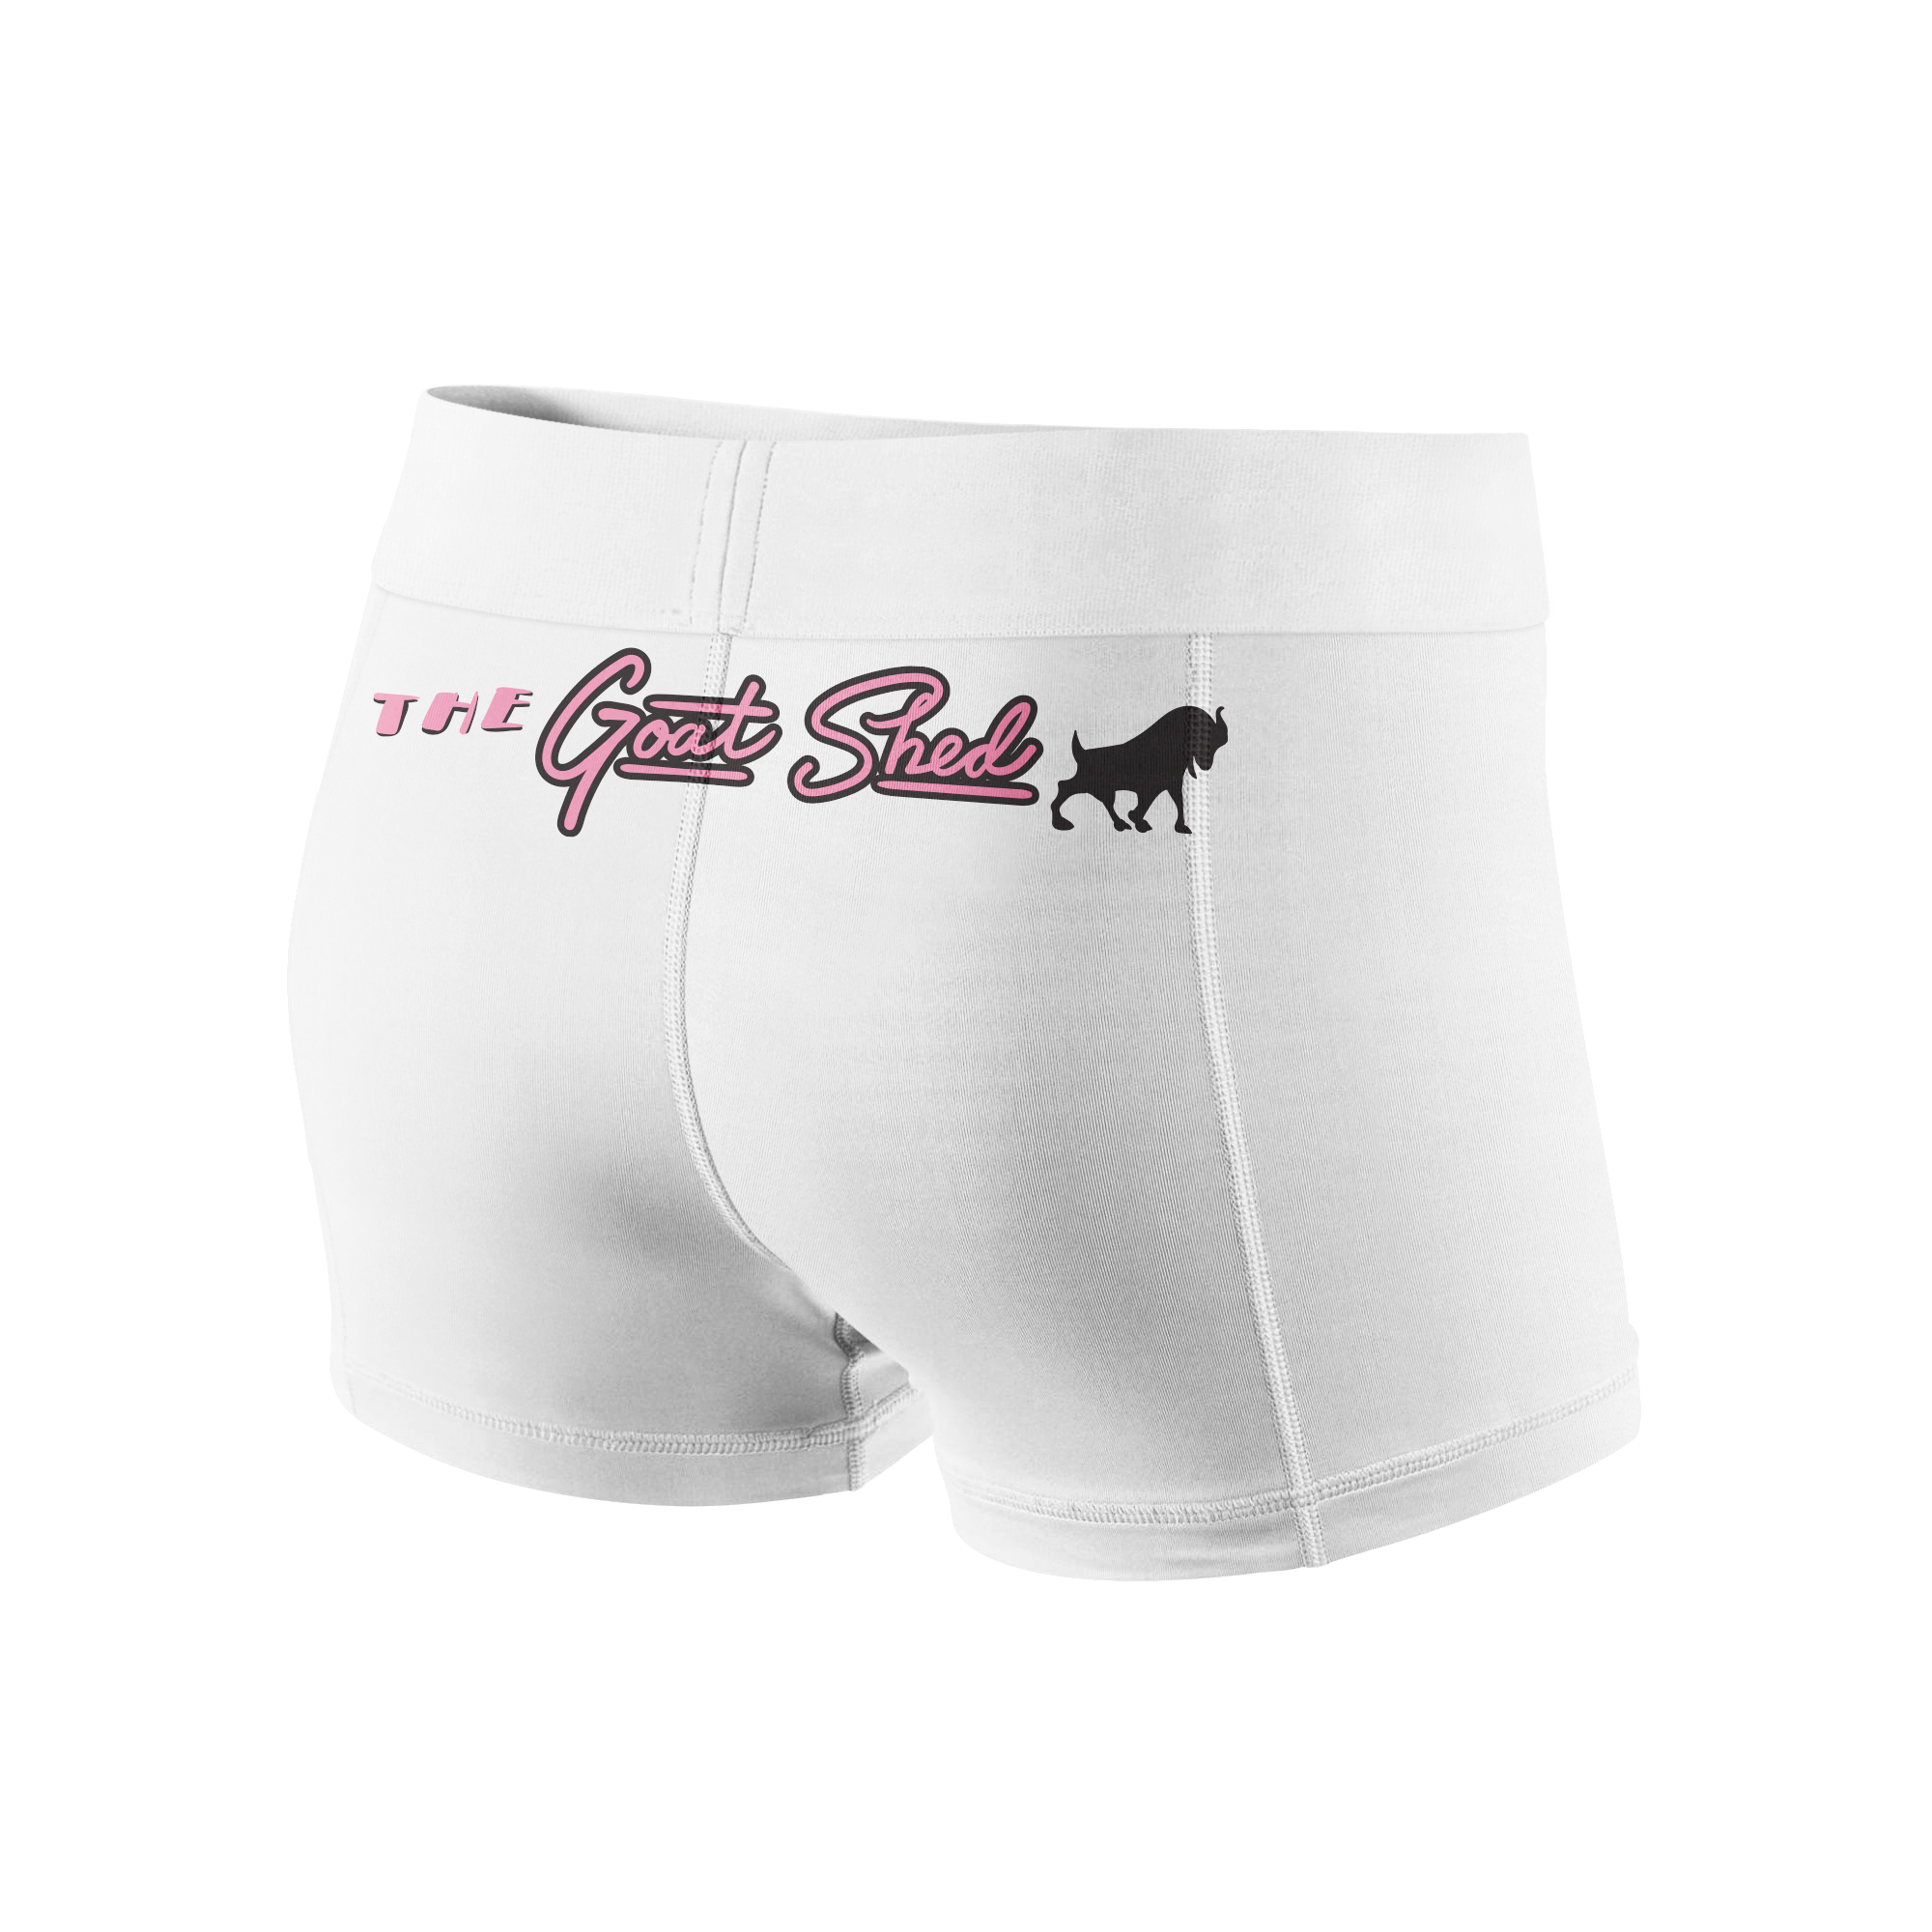 Goat Shed Vale Tudo Shorts - White